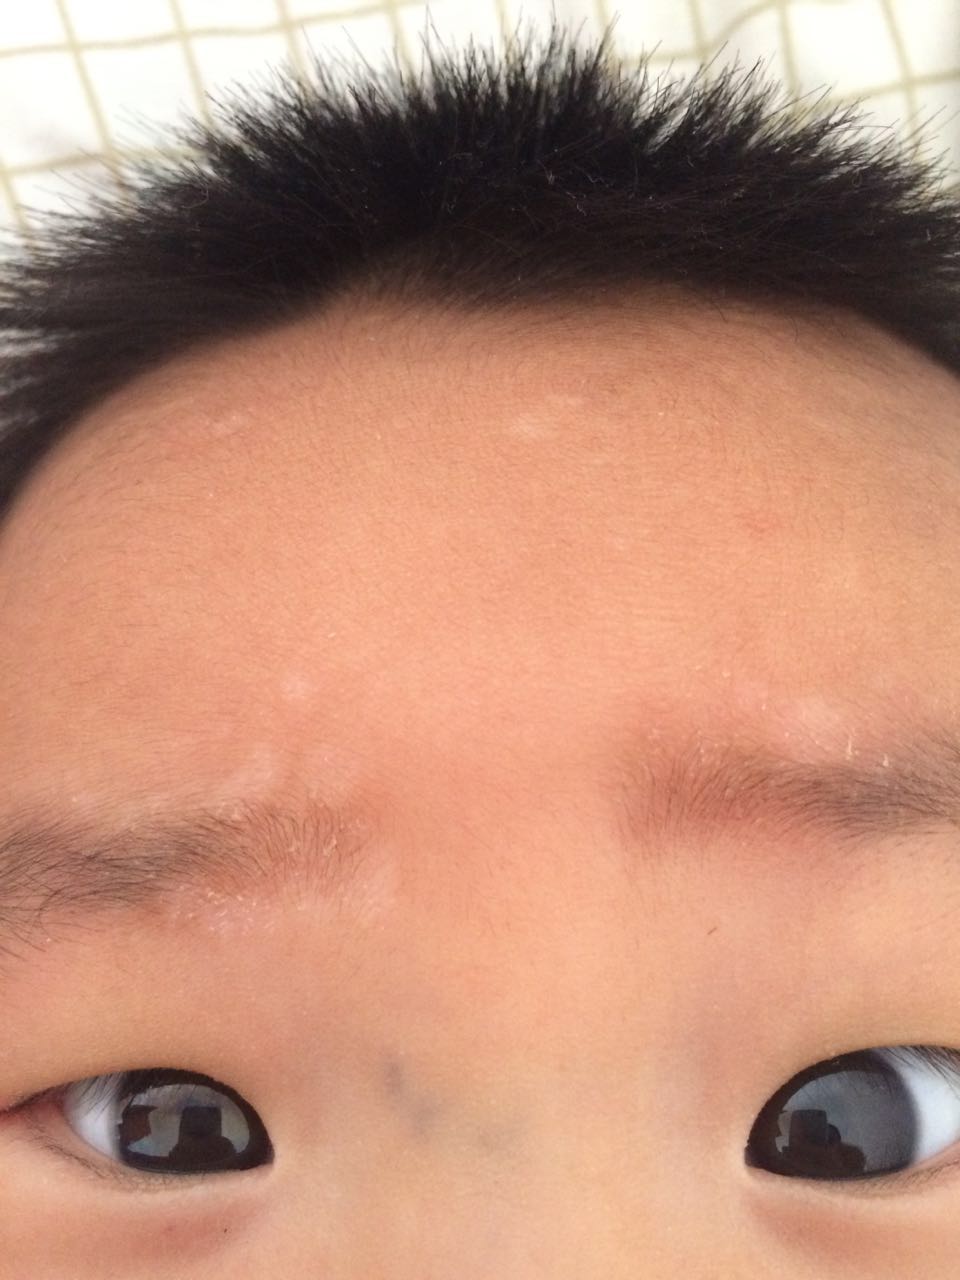 孩子(男,4个半月)眉毛上长了白色的东西,不知道是什么,也不